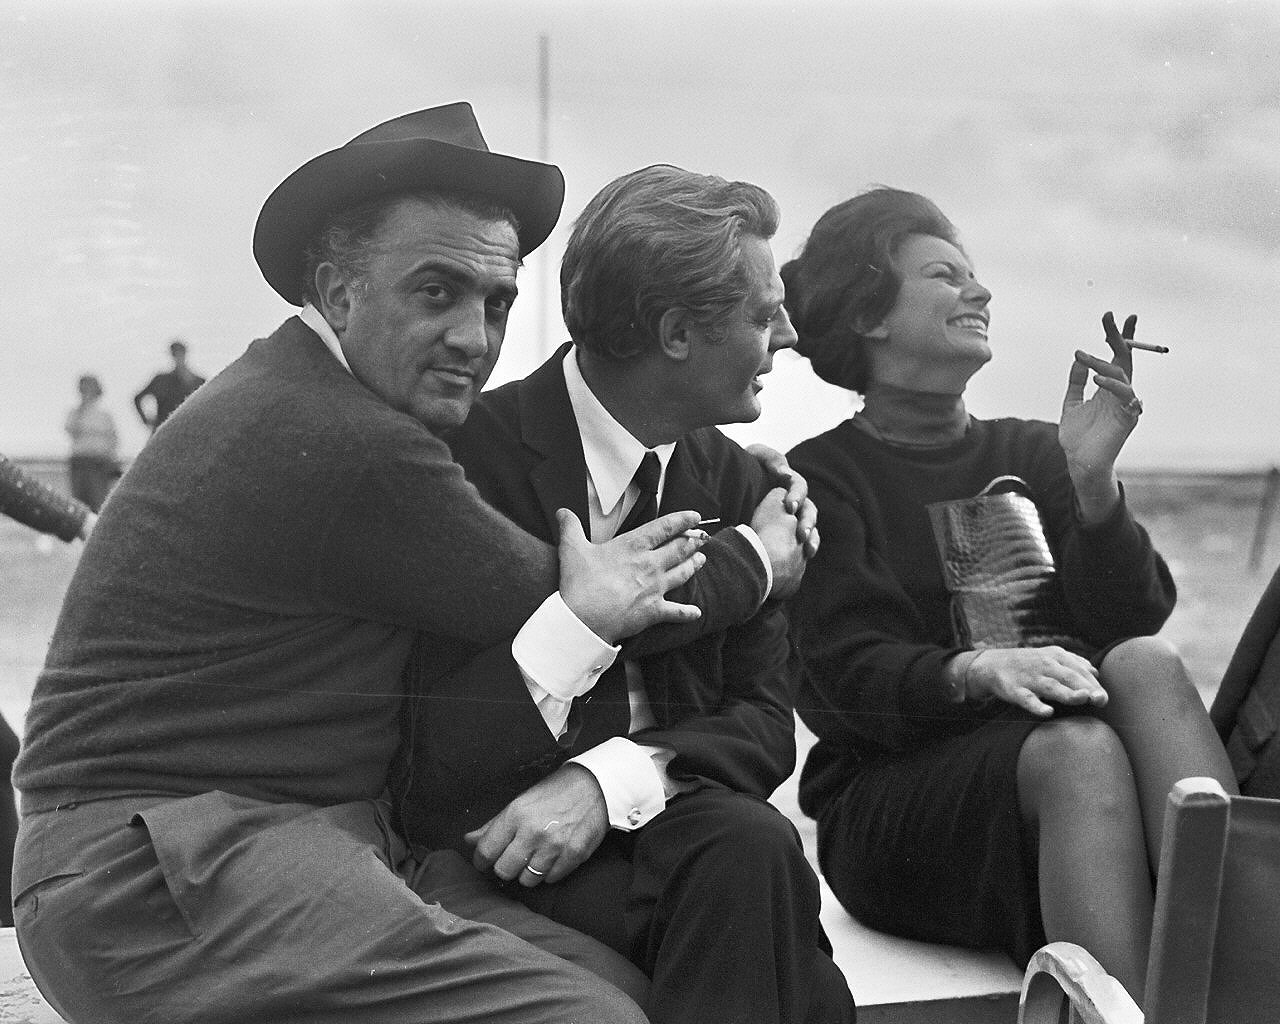 Cine 34, il nuovo canale di tutto cinema italiano, dedica il primo giorno a Fellini per i cent’anni dalla nascita